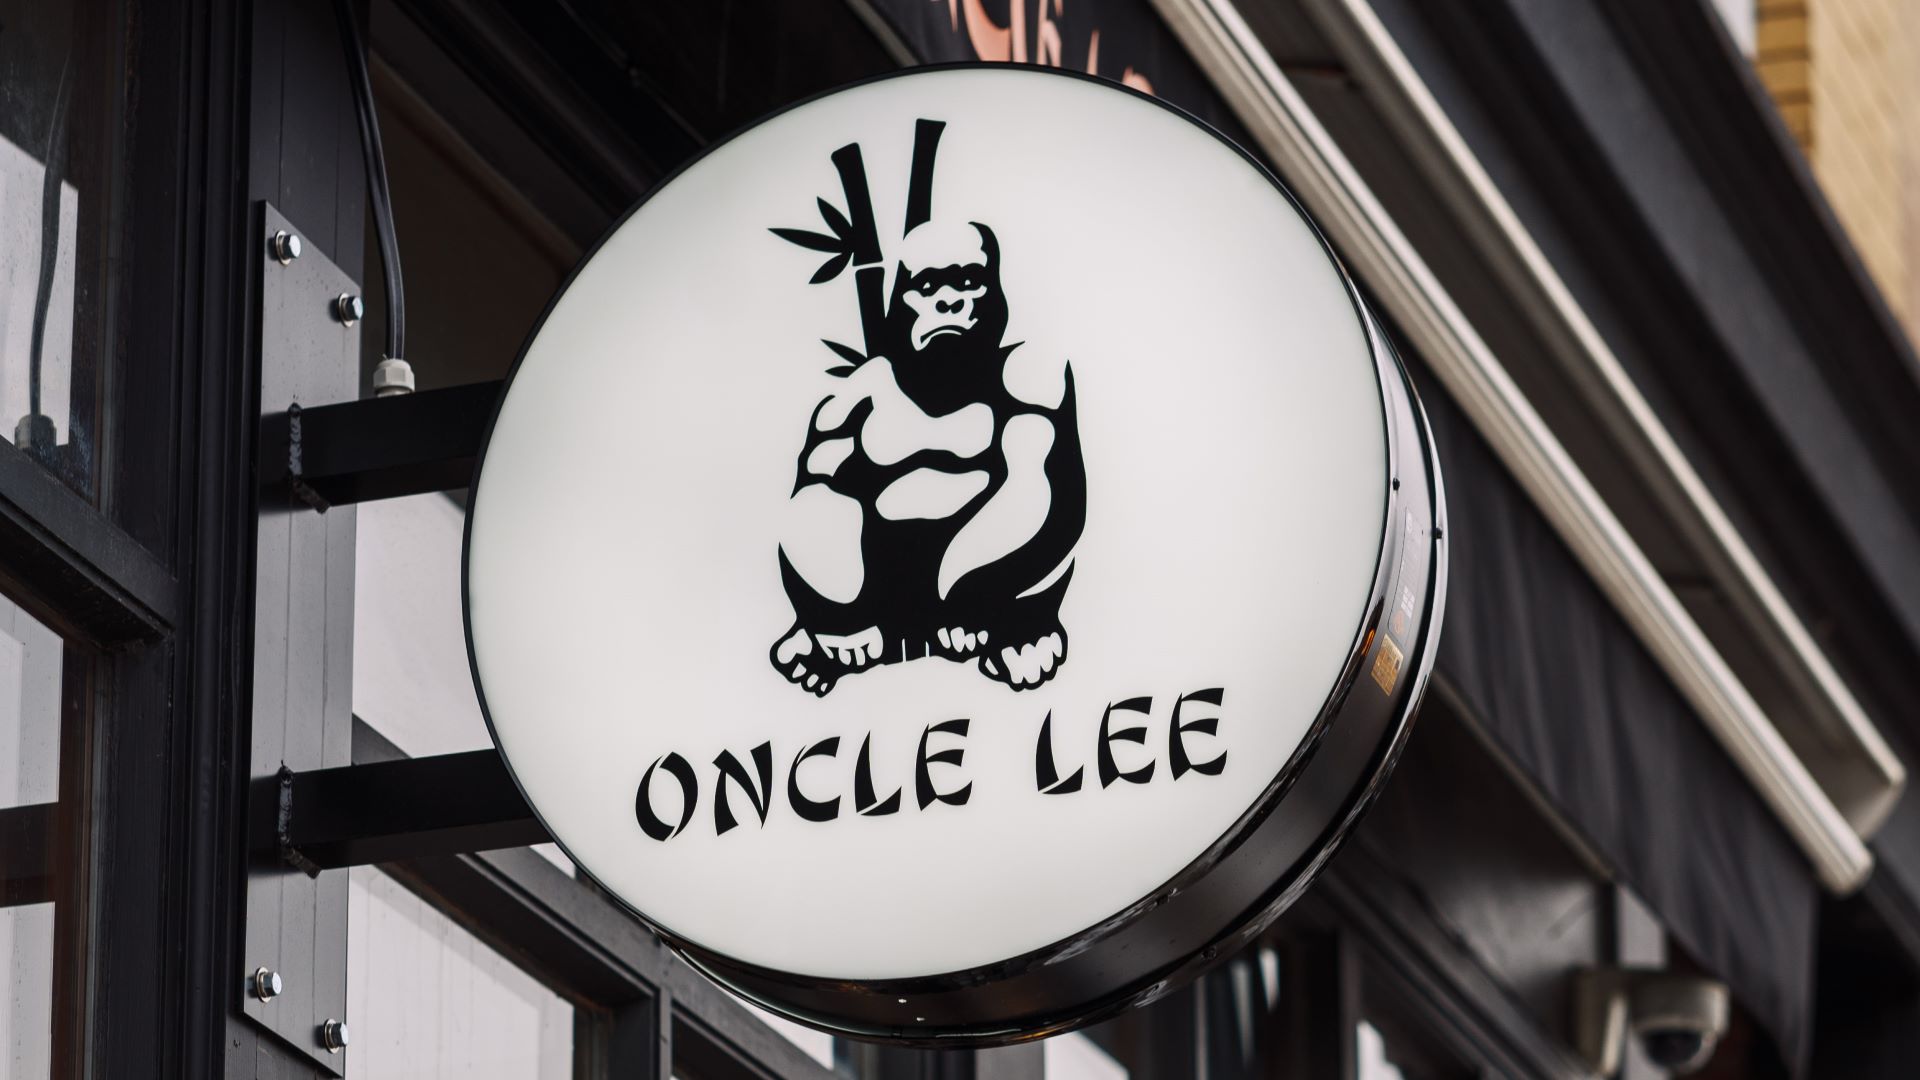 Oncle Lee